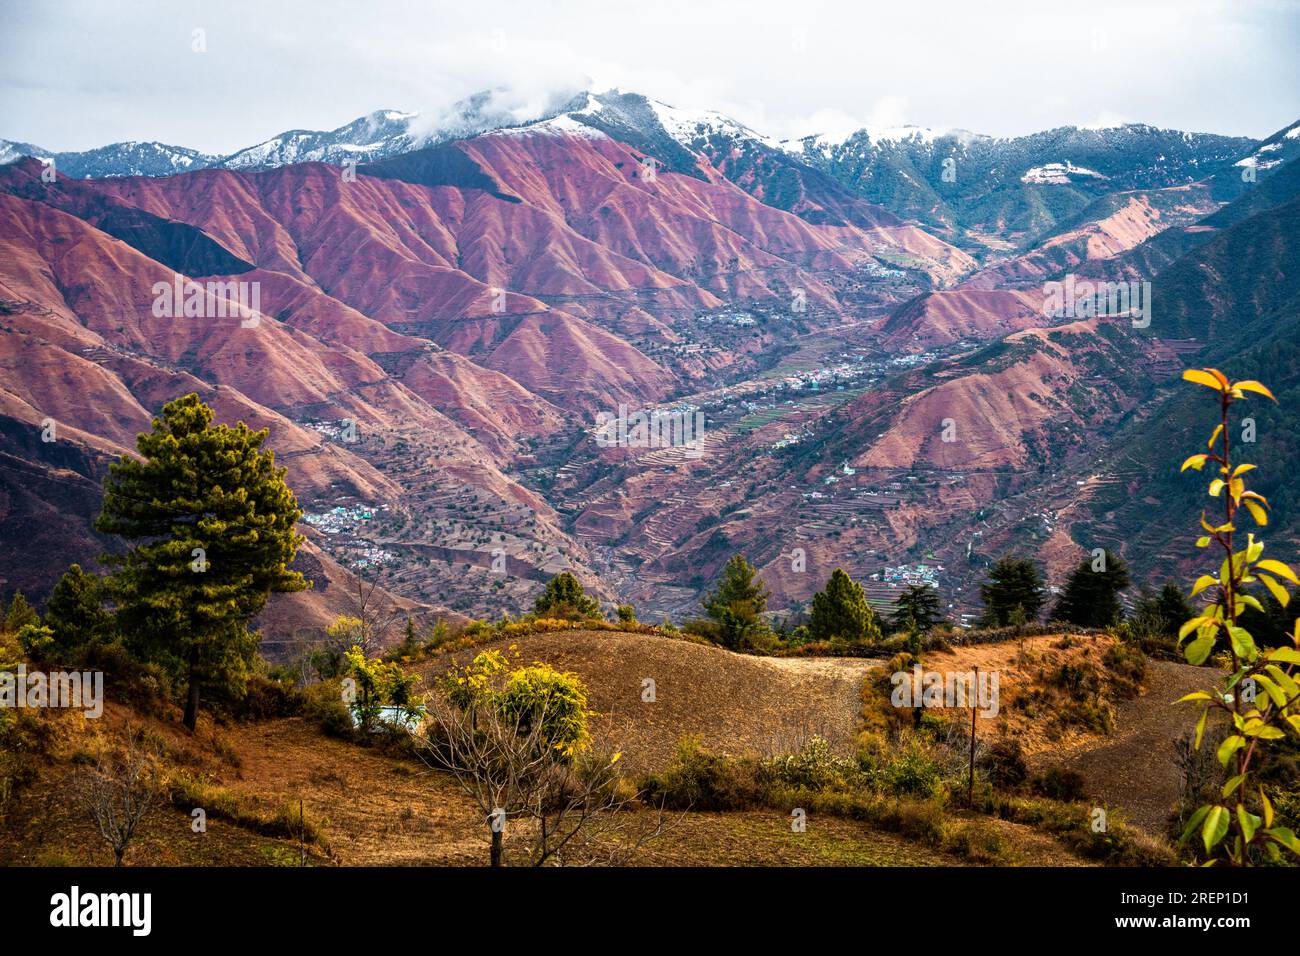 Vette innevate e profonde valli con creste montuose nell'Himalaya. Regione di Yamnotri, Uttarakhand India. Foto Stock